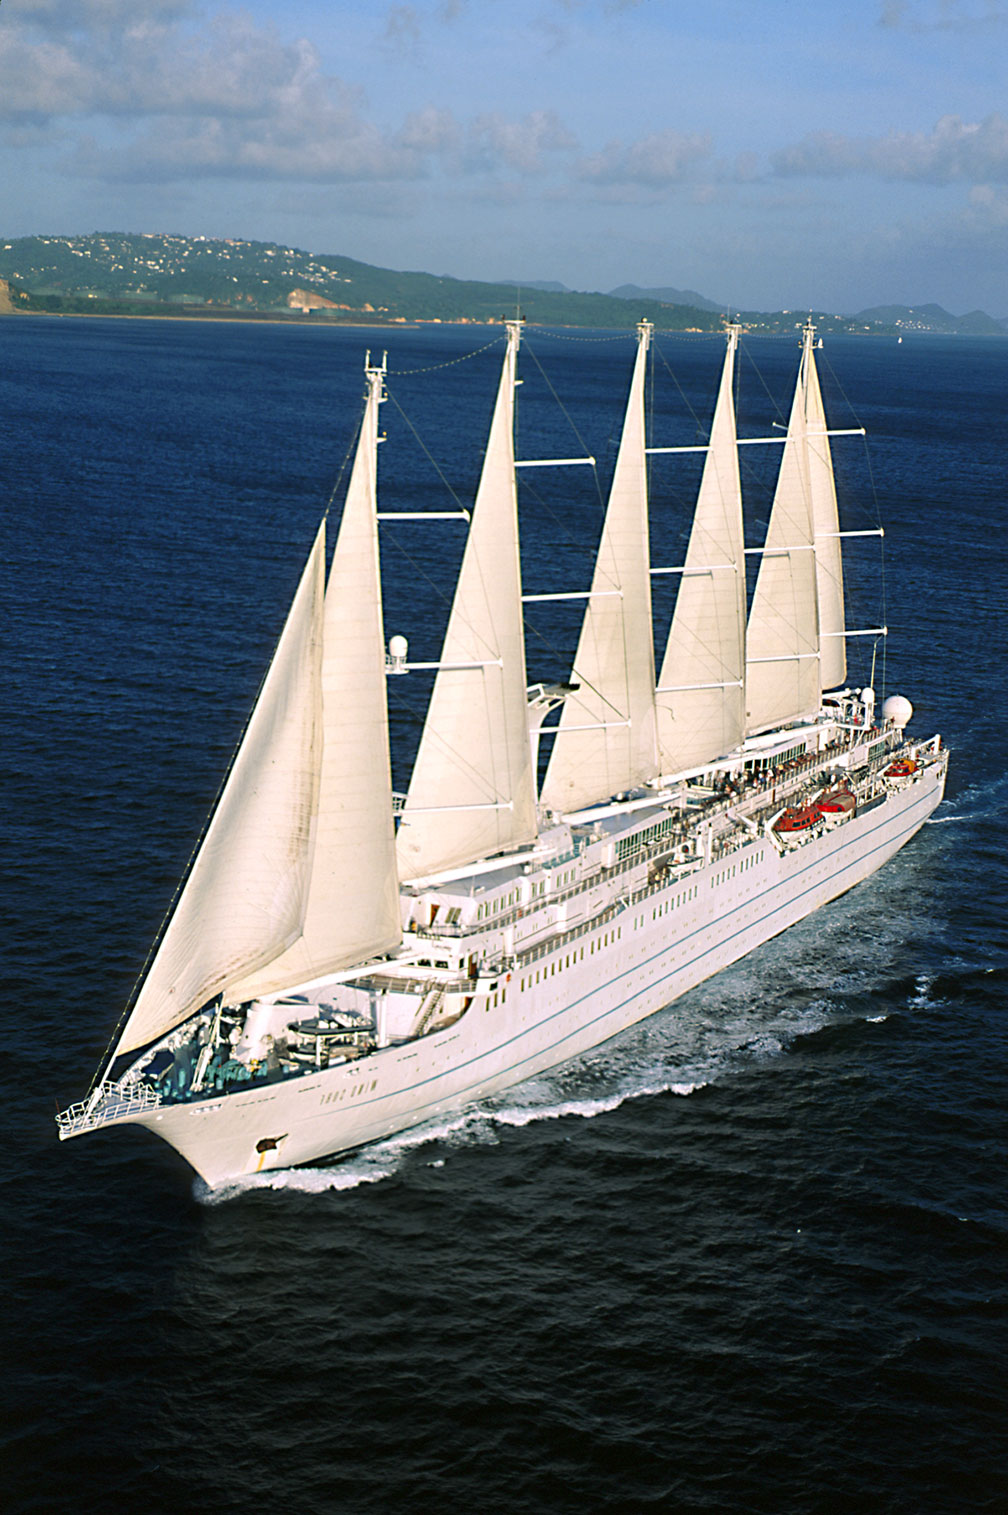 Wind Surf, Windstar's flagship yacht. Windstar Windsurf ship